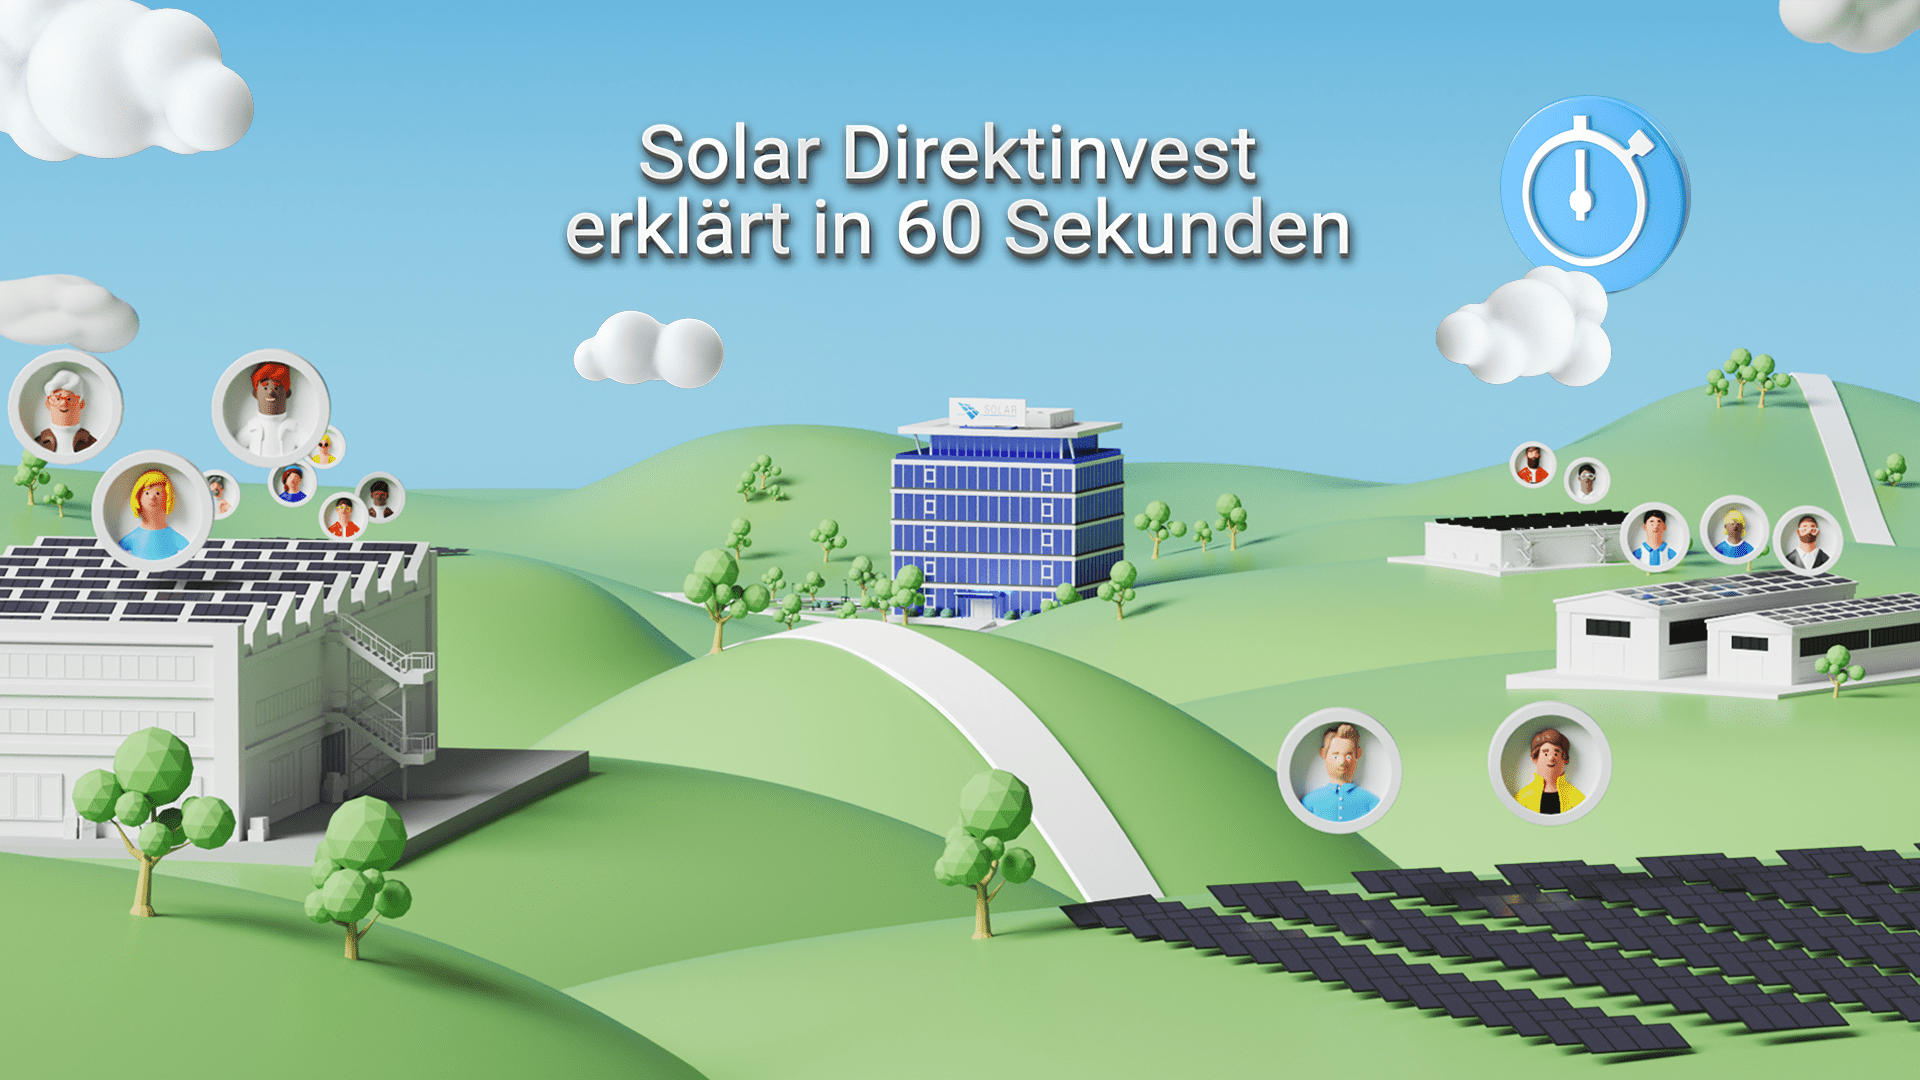 Inversión solar